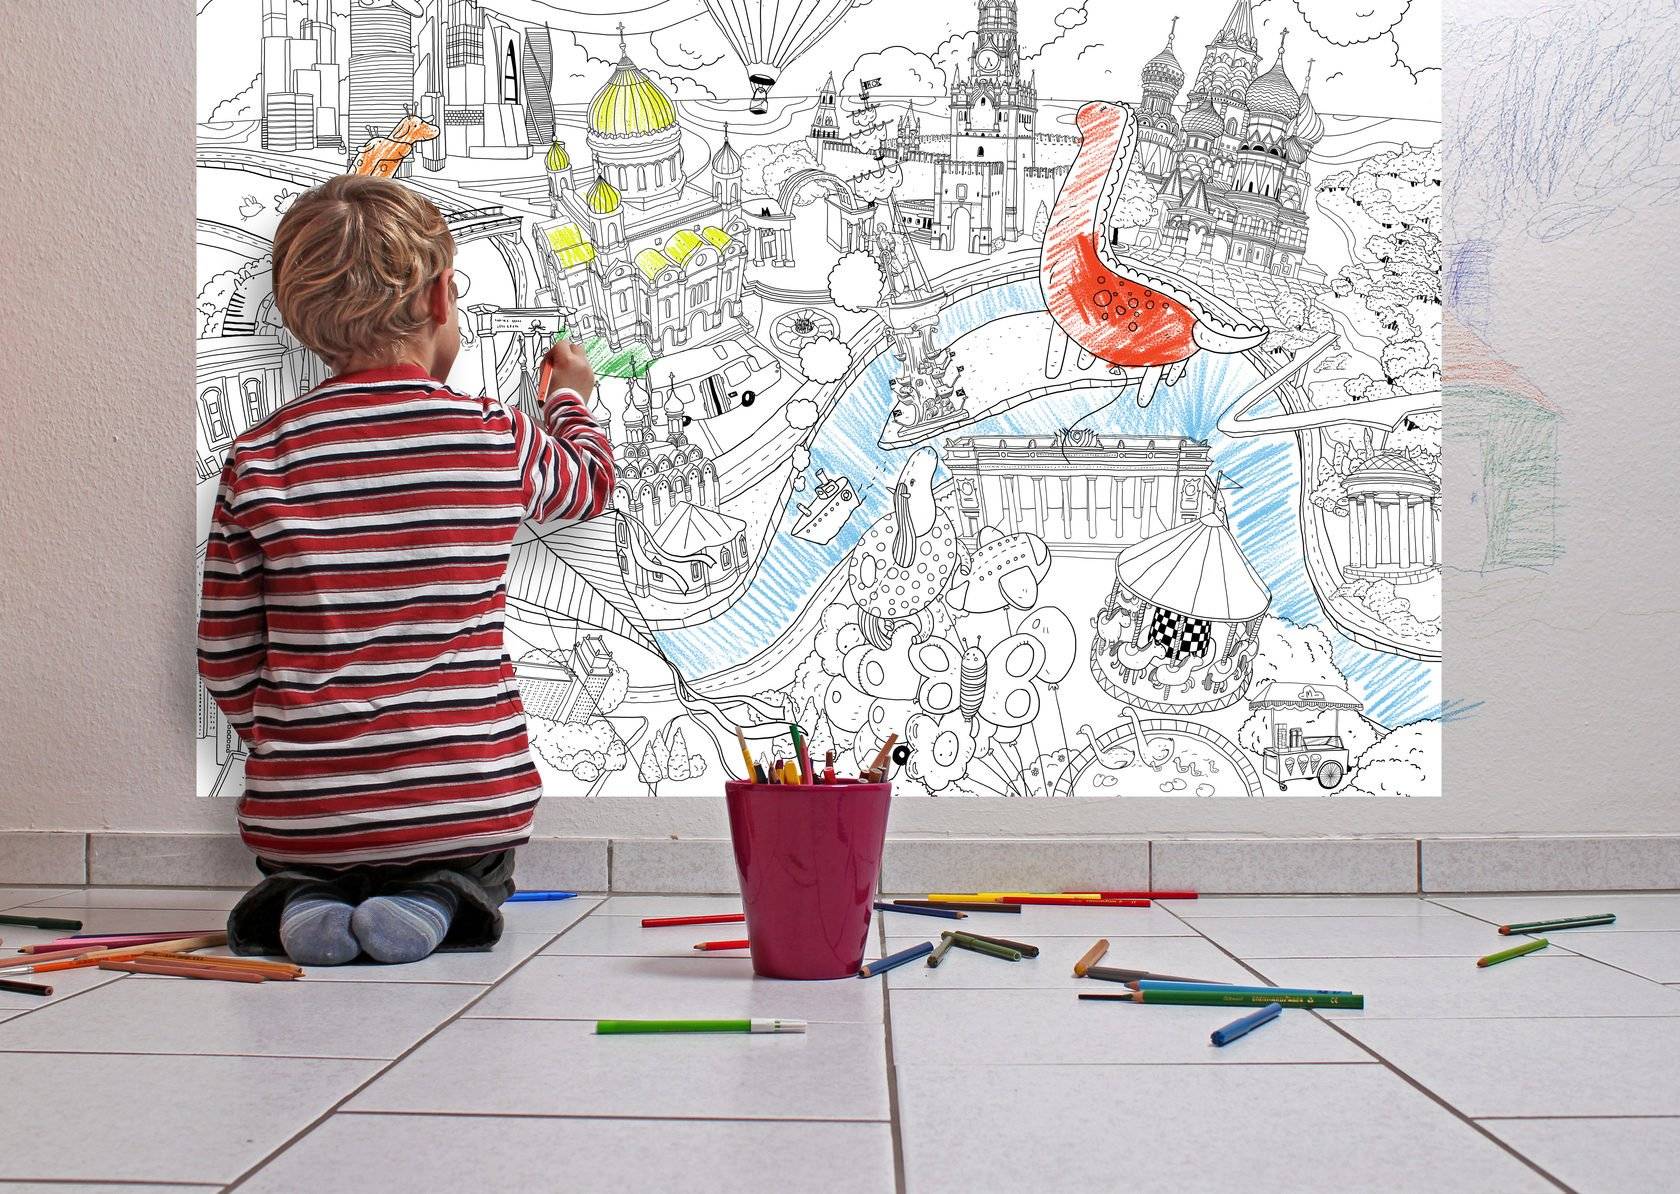 Раскраски - обзор идей для раскрасок: 150 фото лучших новинок для детей раскрасок 2022 года для разукрашивания по цифрам